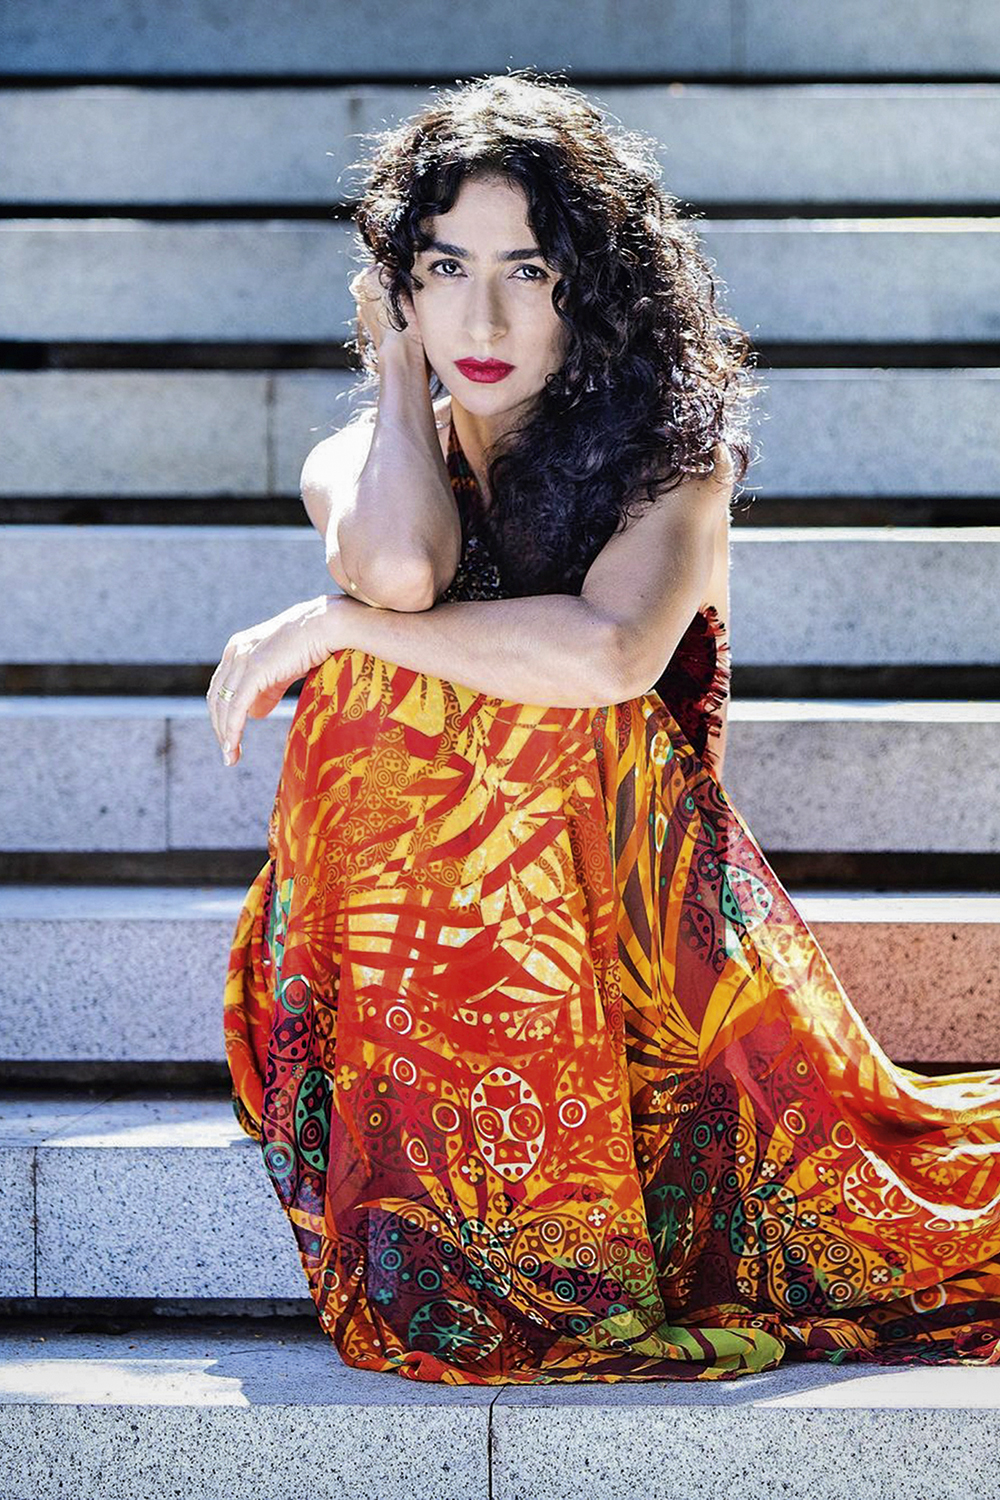 RESERVADA - Marisa Monte: a cantora se mantém longe das redes sociais e só aparece quando o assunto é a sua obra -